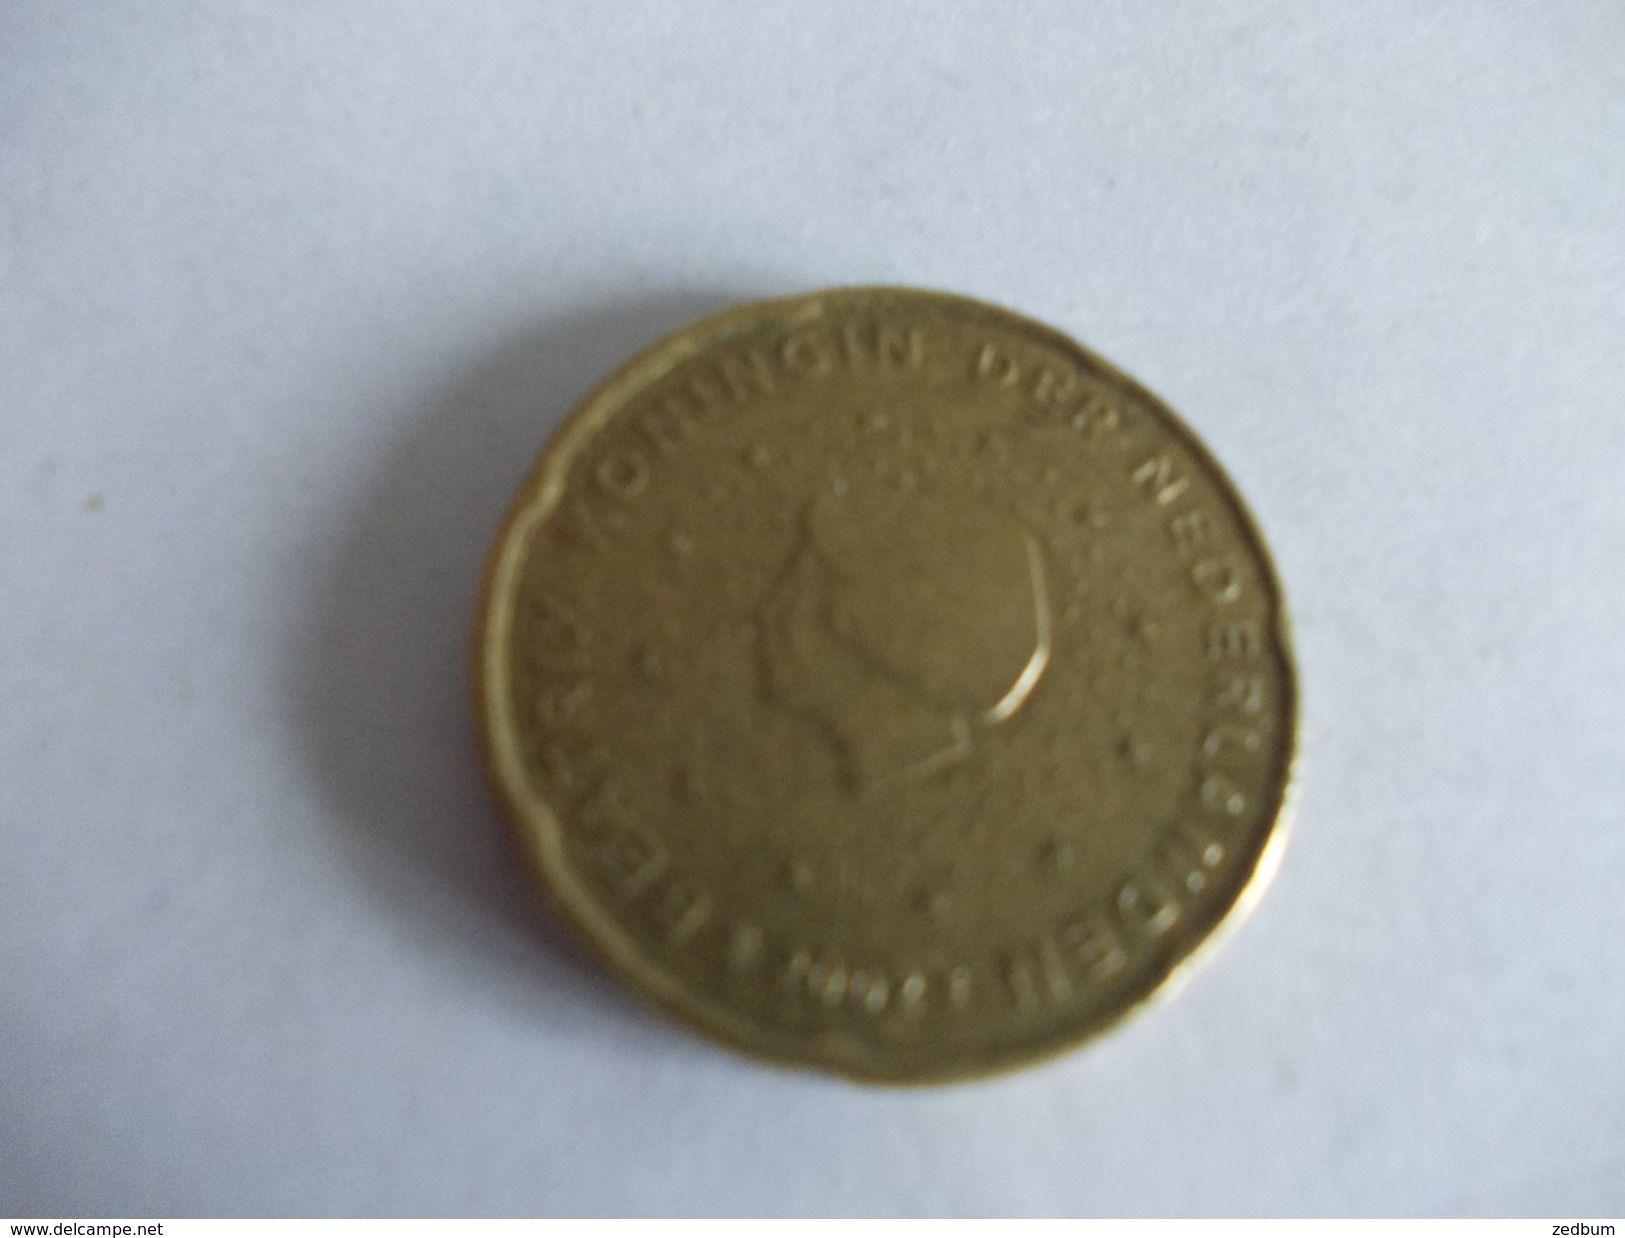 Monnaie Pièce De 20 Centimes D' Euro De Pays Bas Année 2002 Valeur Argus 1 &euro; - Nederland